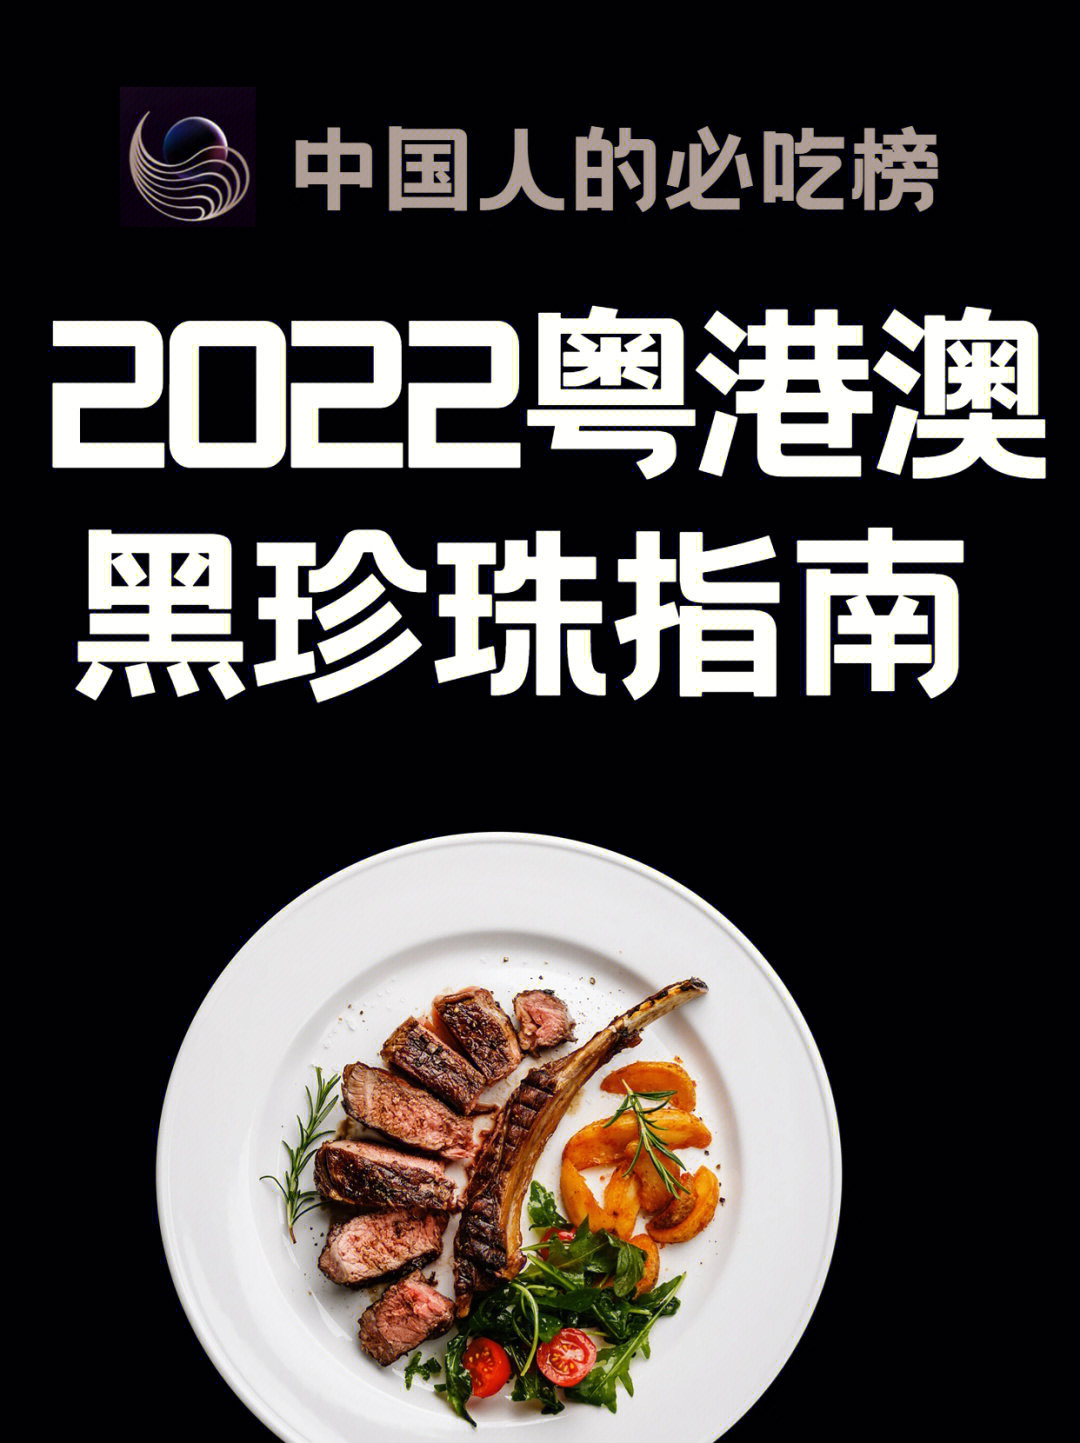 广州黑珍珠餐厅名单图片